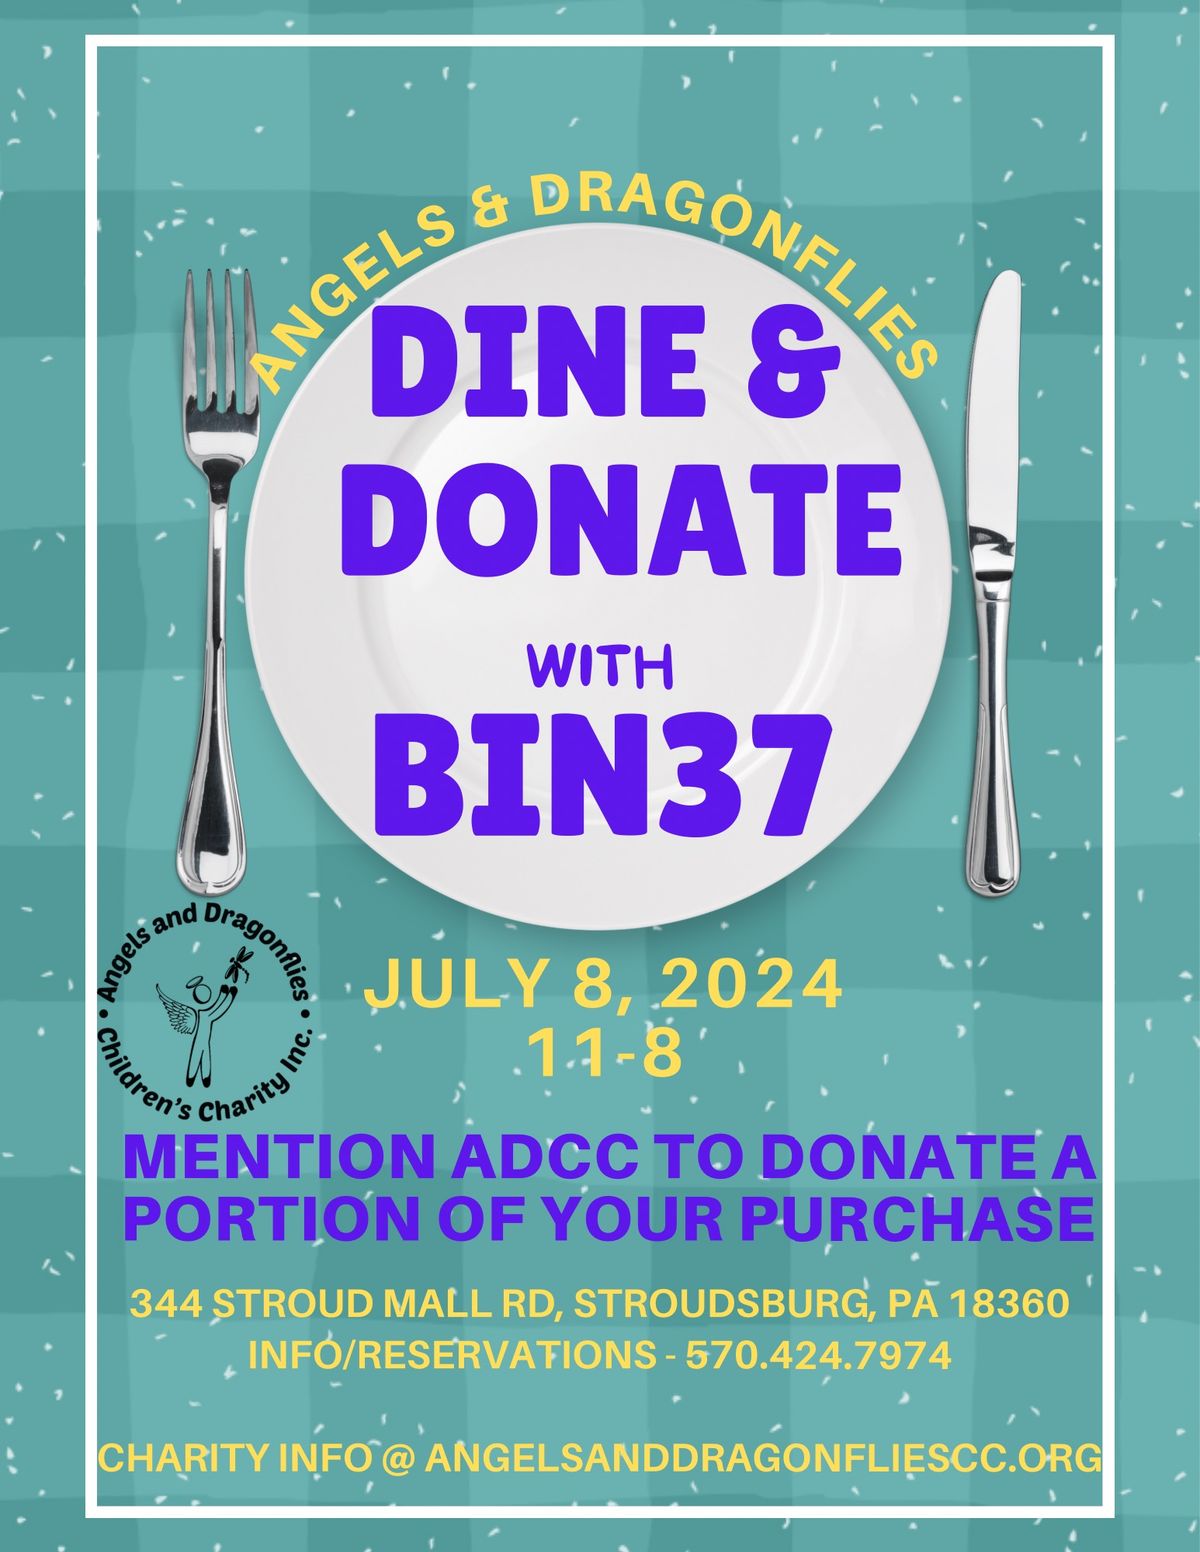 Dine & Donate at Bin 37